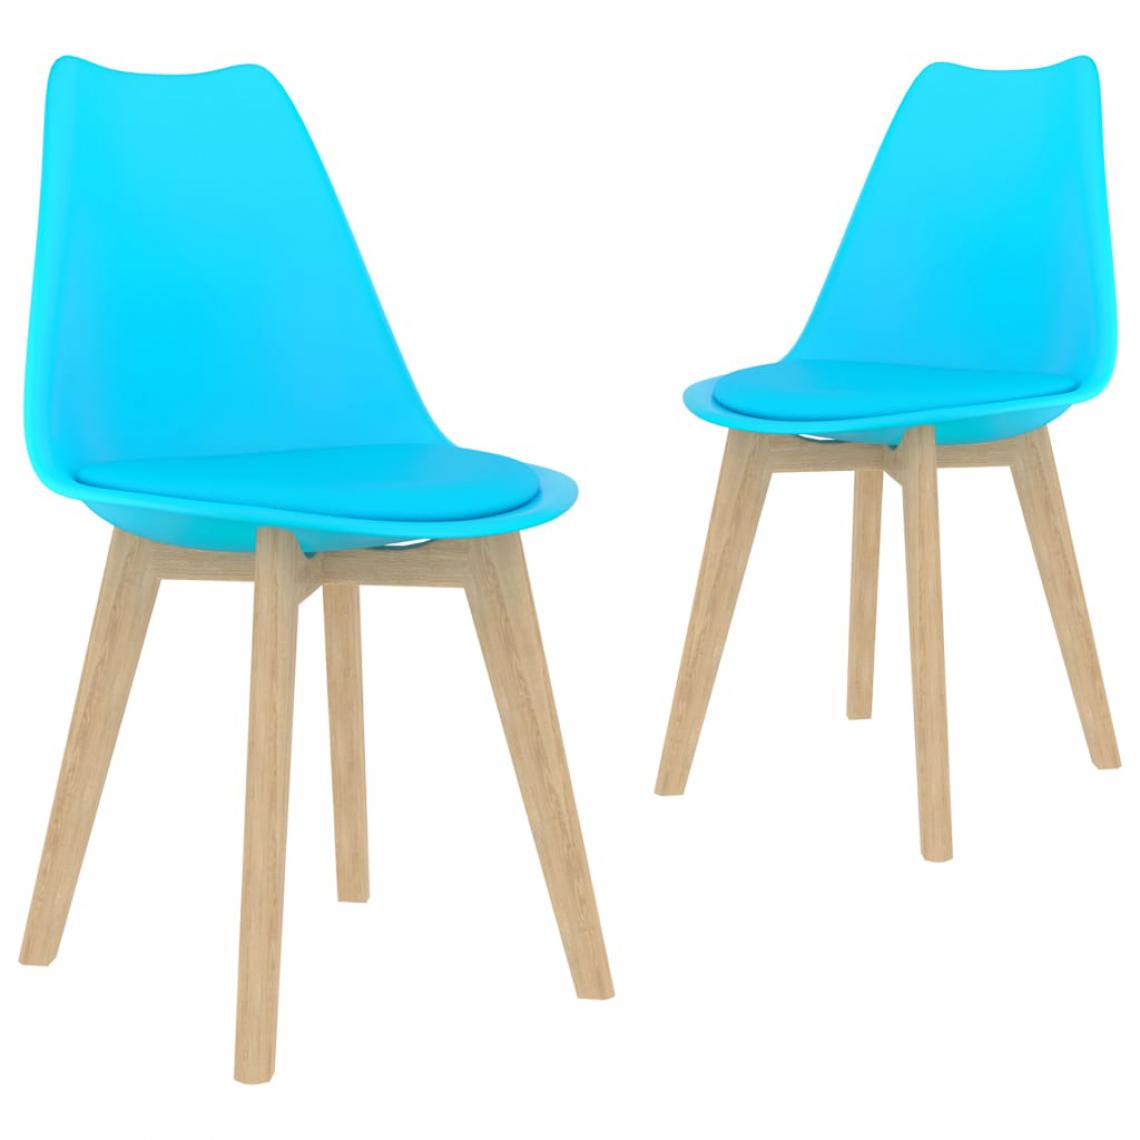 Icaverne - Moderne Fauteuils et chaises edition Nassau Chaises de salle à manger 2 pcs Bleu Plastique - Chaises